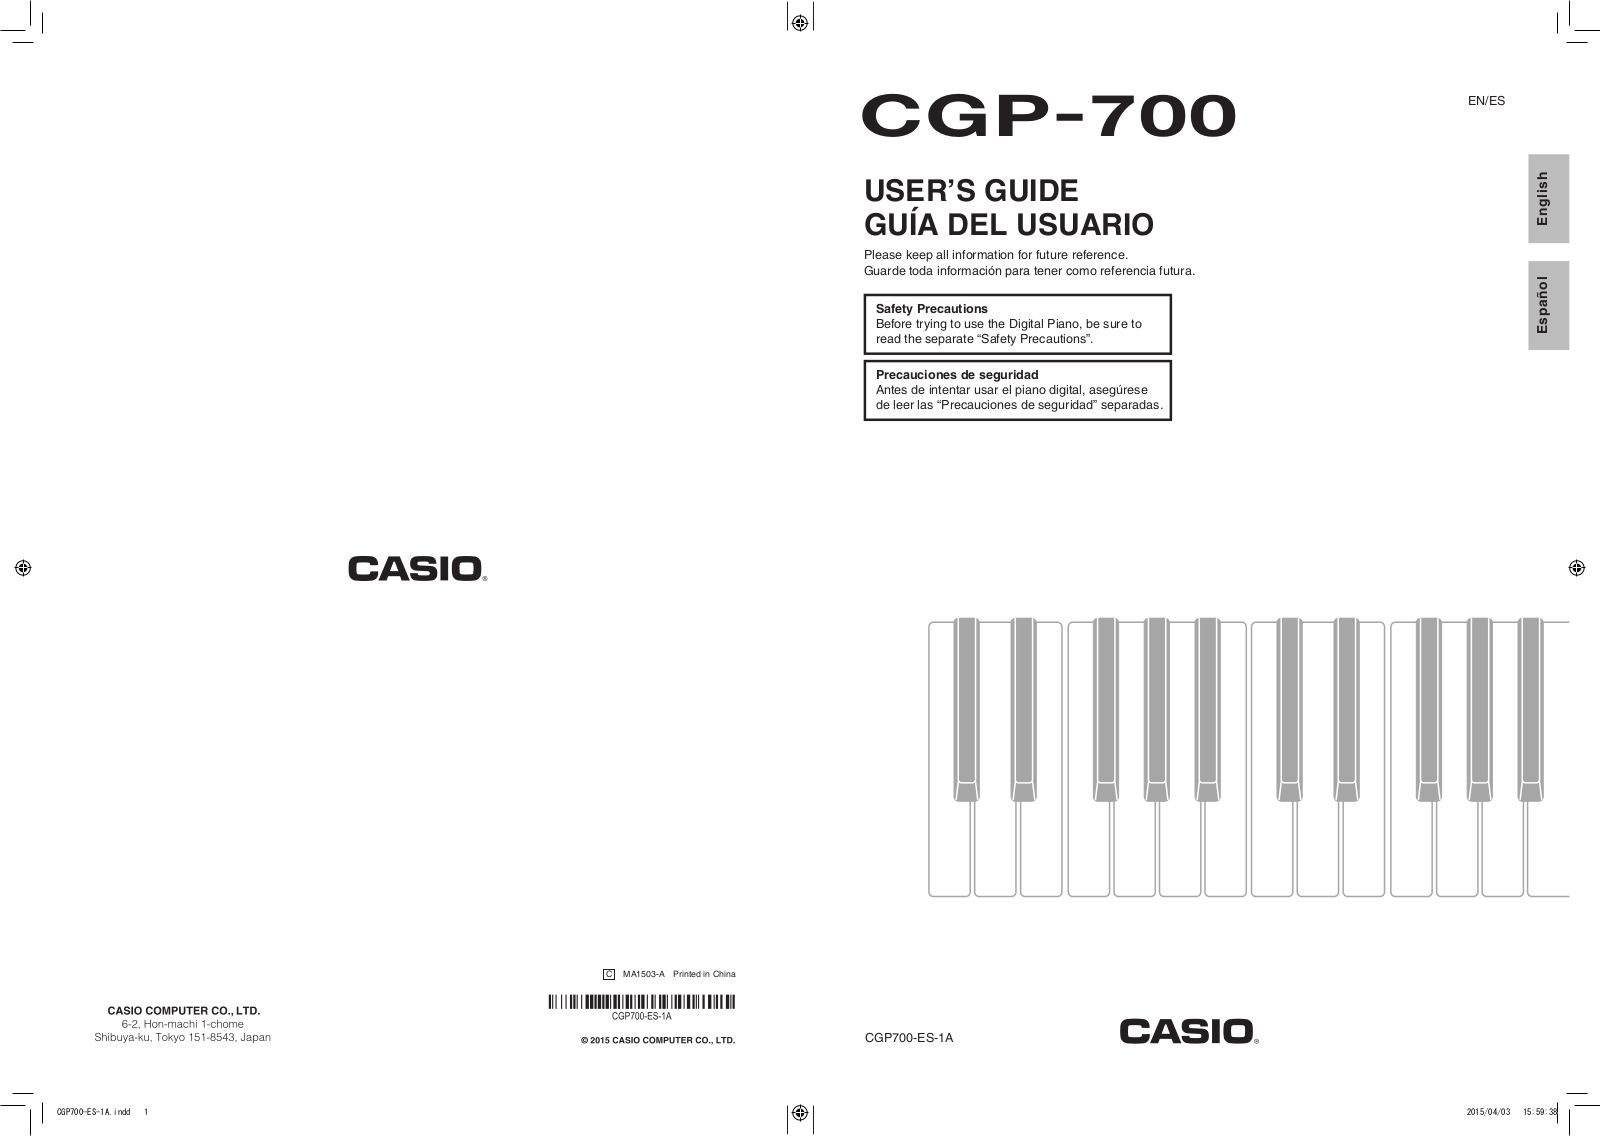 Casio CGP-700 User Guide